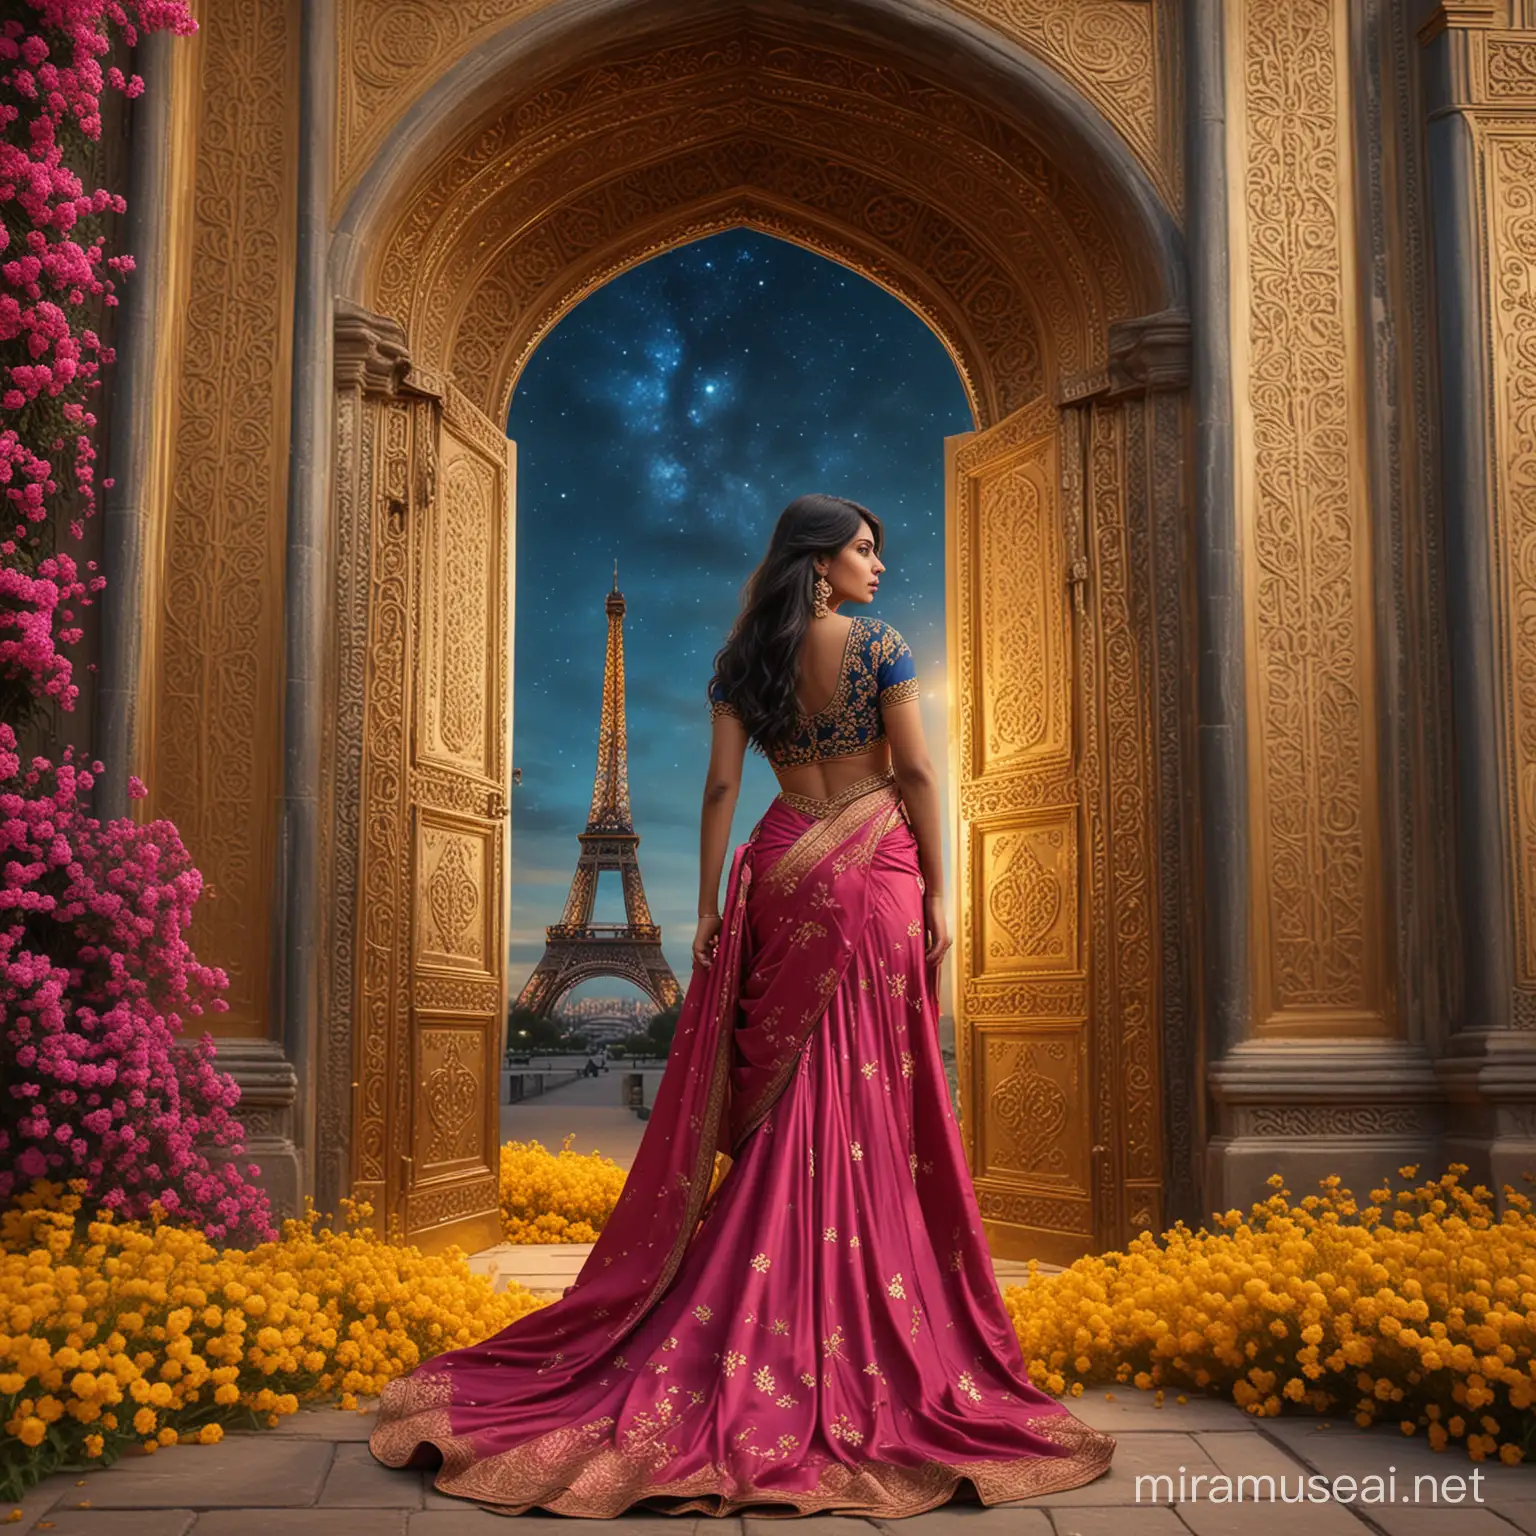 Elegant Woman Standing on Dark Yellow Flowers under Opened Golden Arabian Door